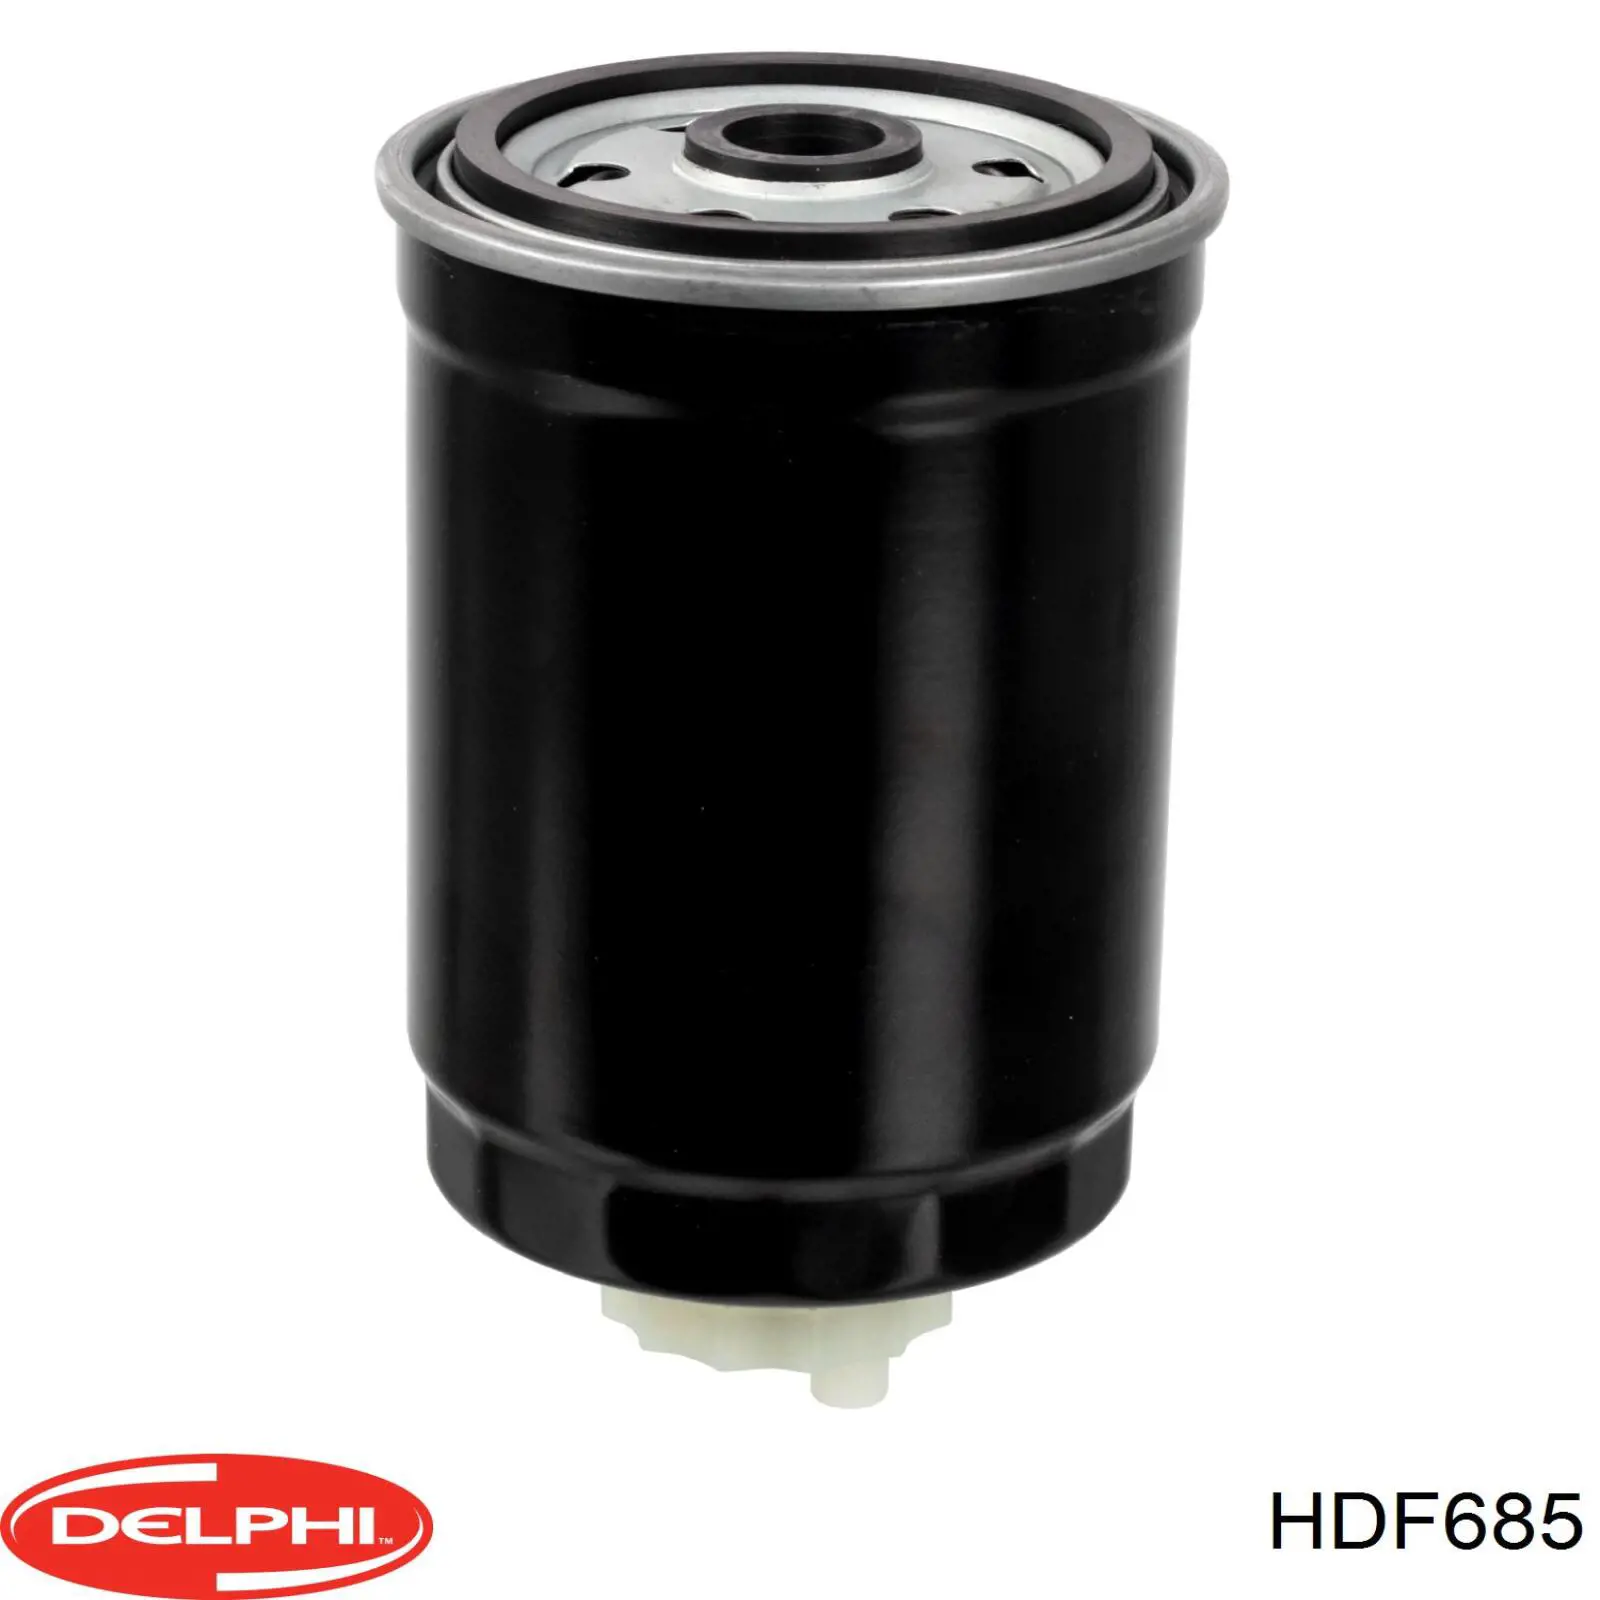 HDF685 Delphi filtro de combustible